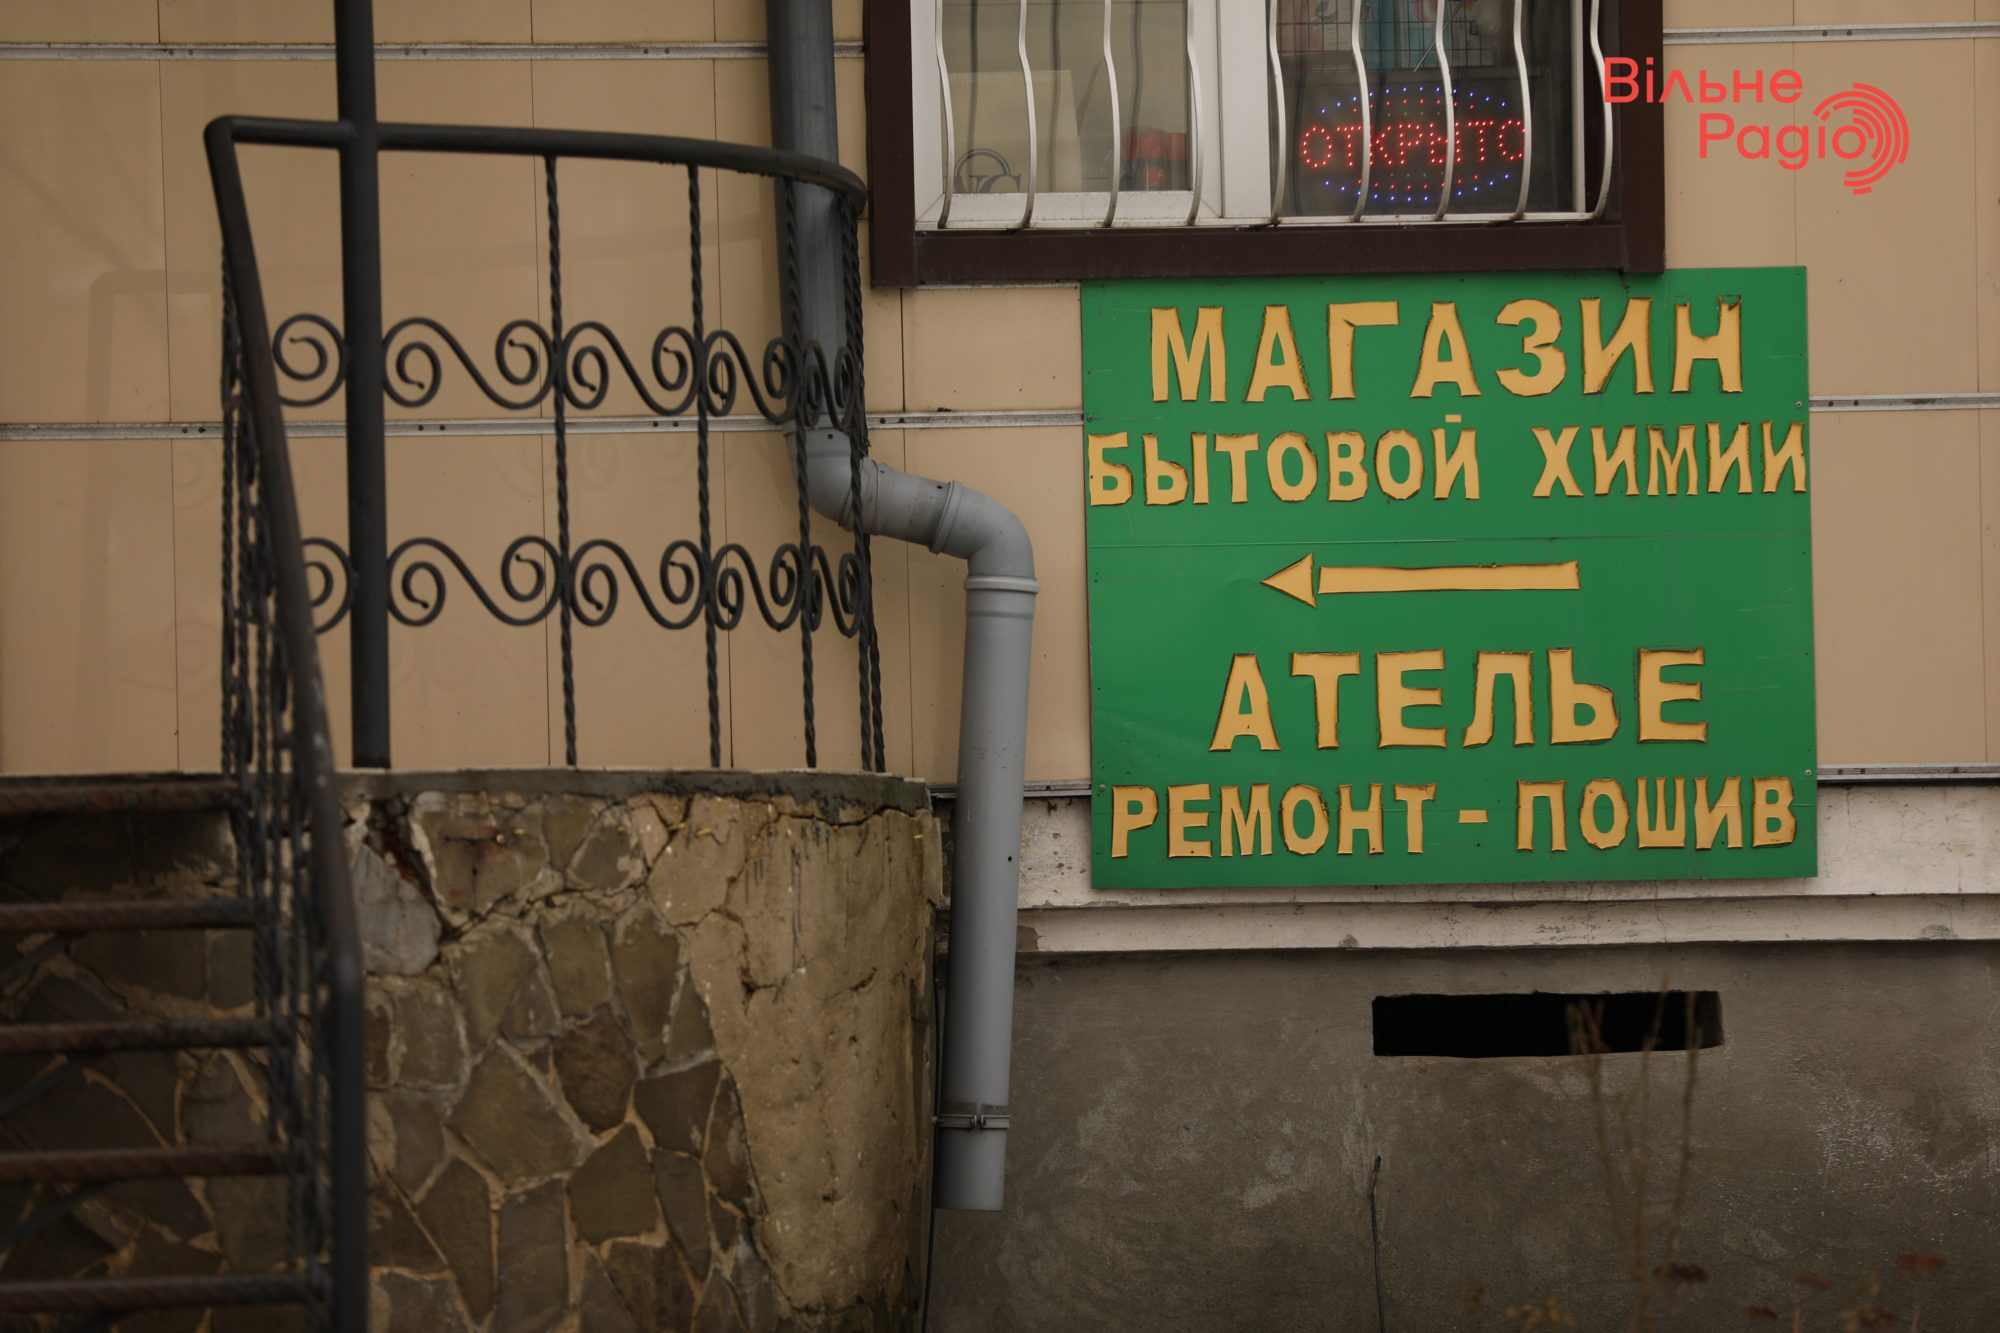 Глав 7 громад Донбасса просят убрать рекламу, которая нарушает “языковой” закон. Какая ситуация в Бахмуте”(ФОТО) 2